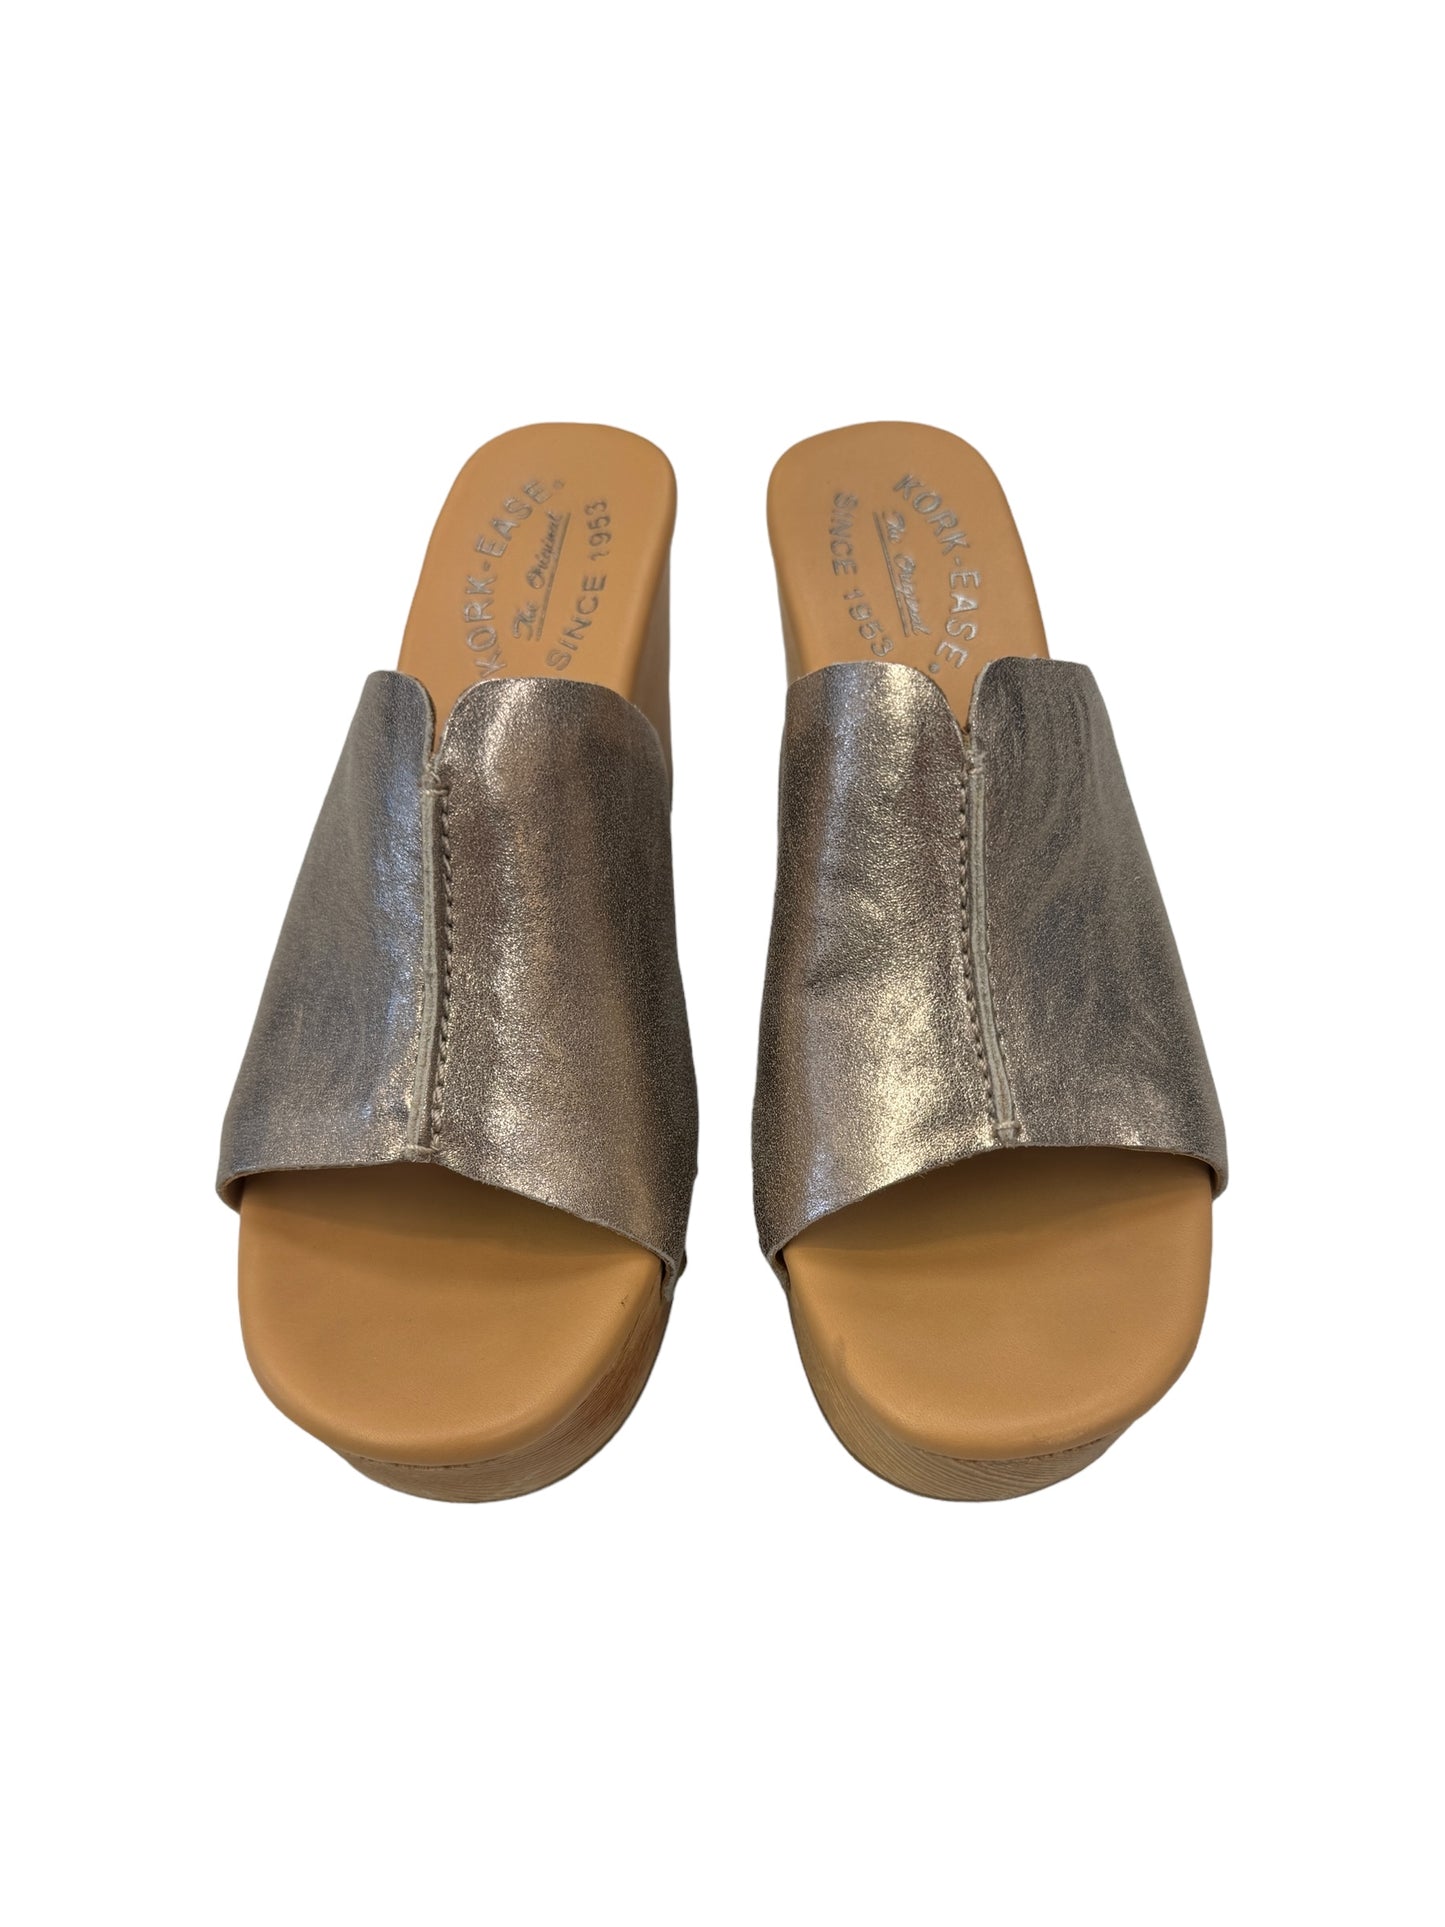 Sandals Heels Platform By Kork Ease  Size: 6